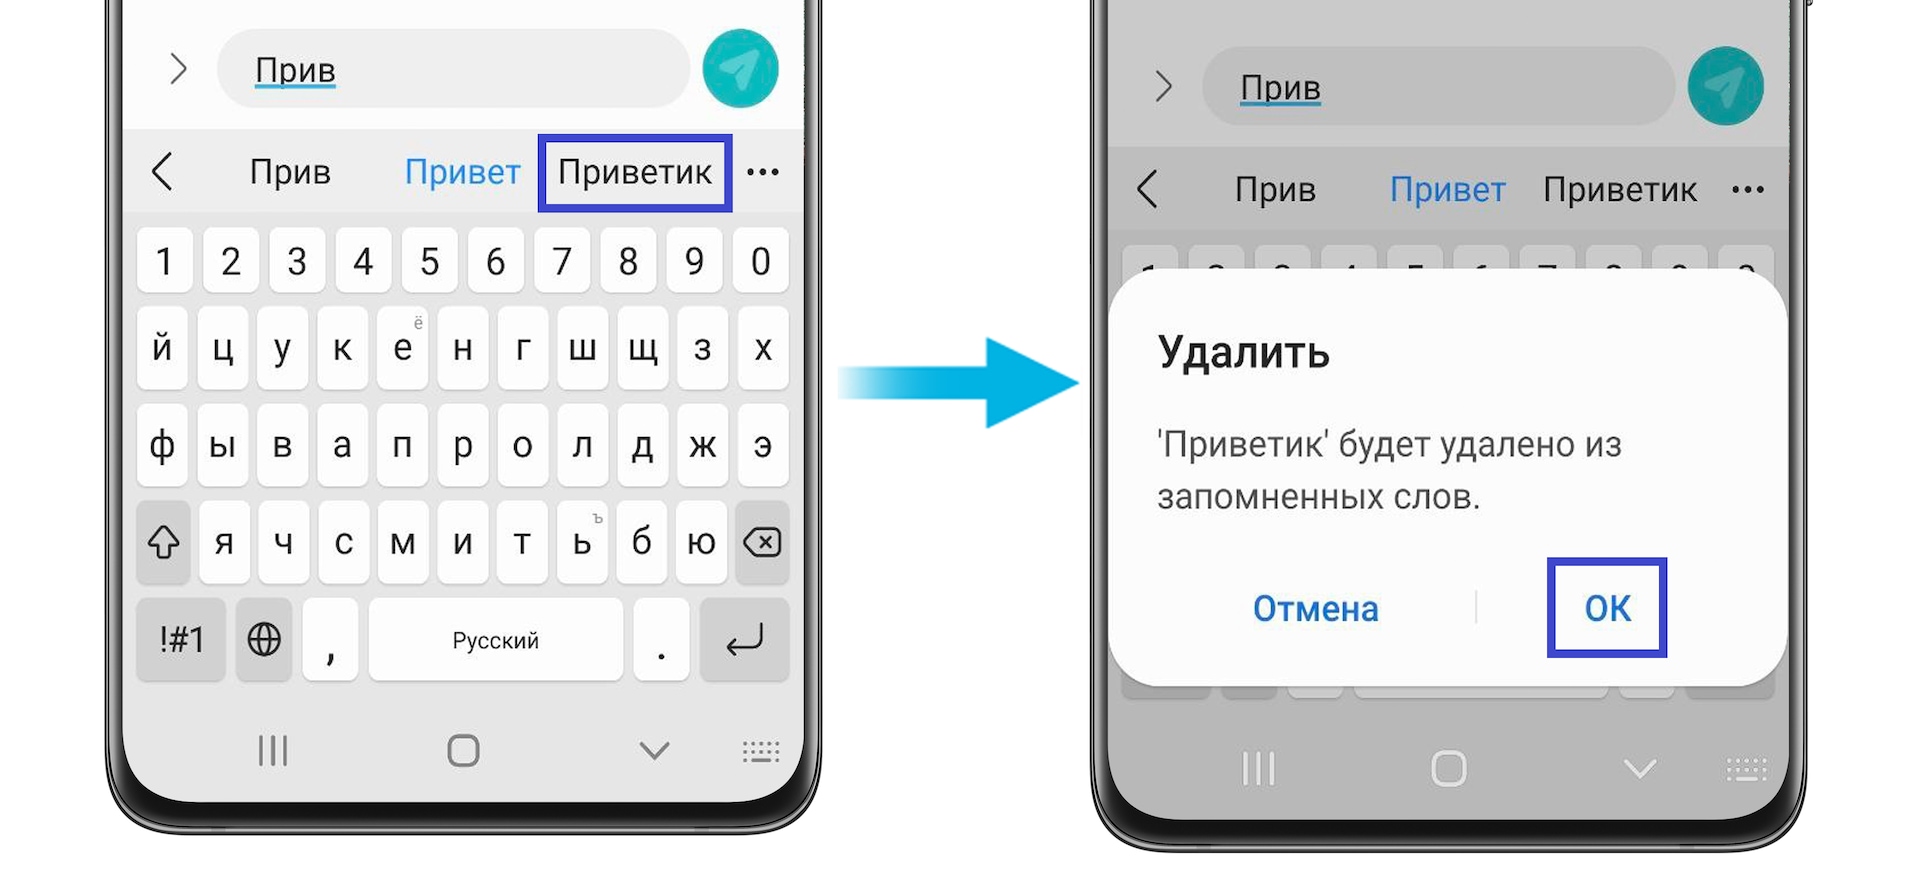 Как перевести телеграмм на русский язык на телефоне. Как телеграмм перевести на русский на андроиде